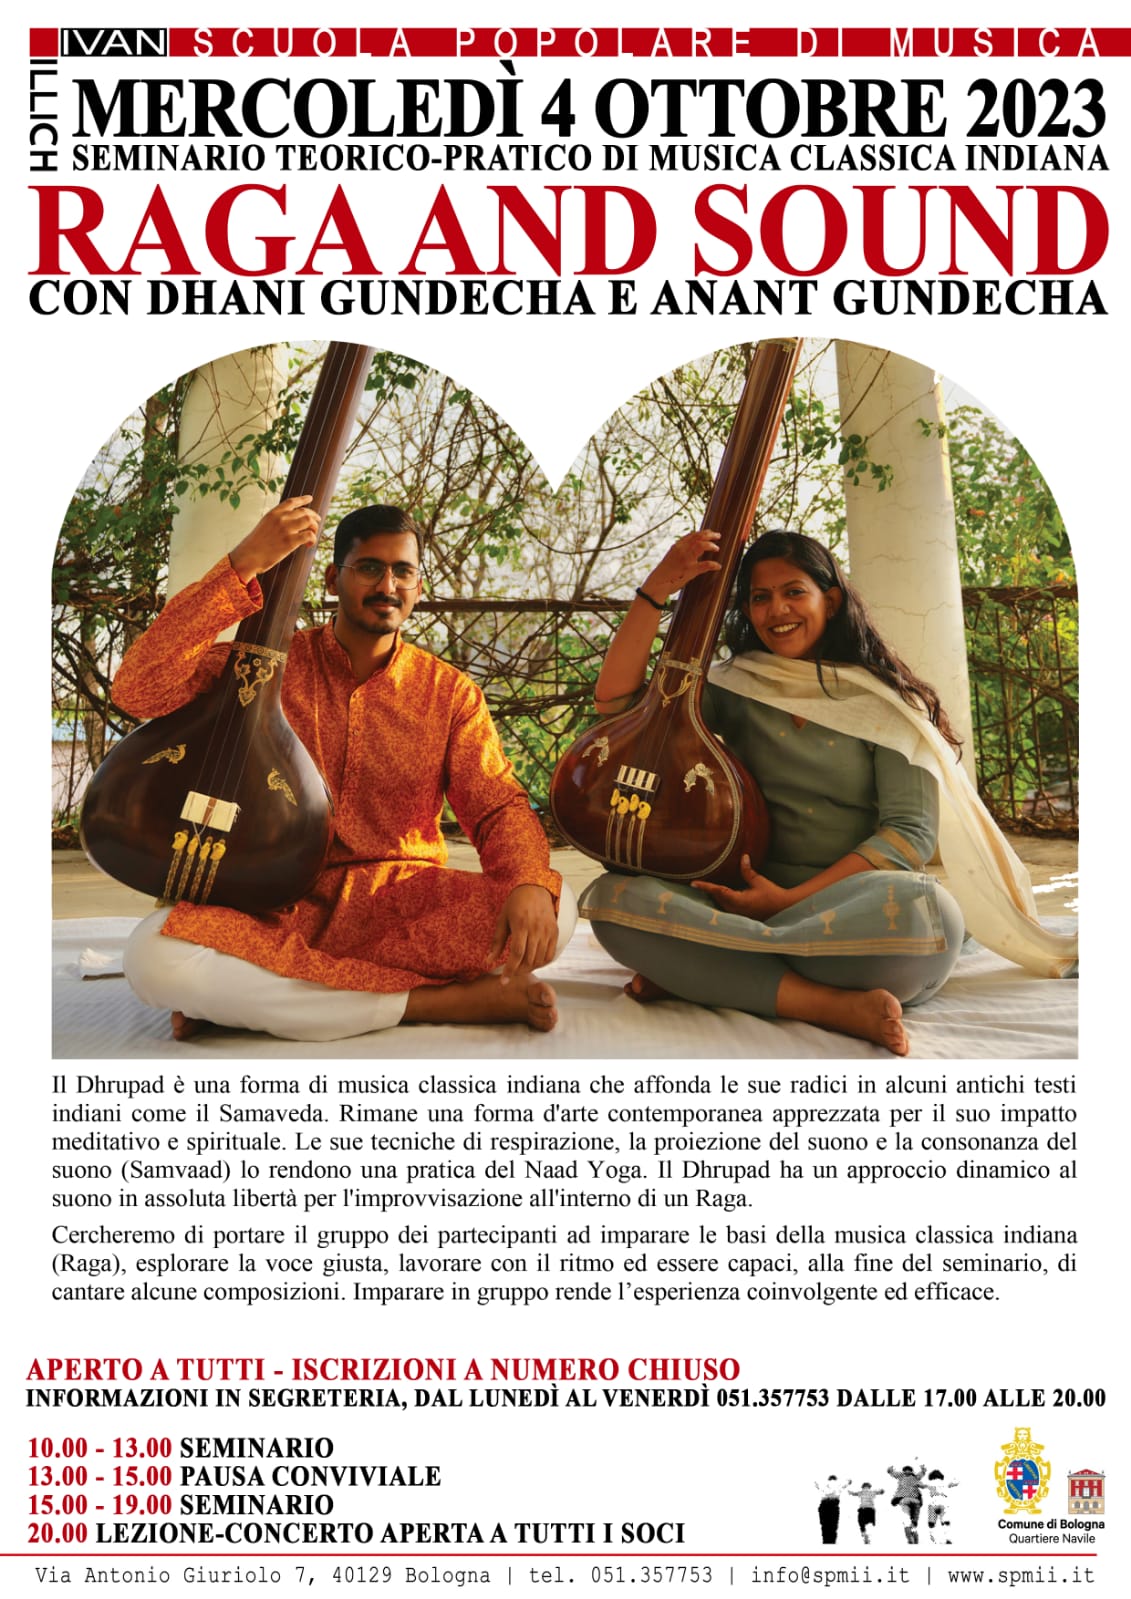  RAGA AND SOUND Seminario teorico pratico di musica classica indiana con Dhani Gundecha e Anant Gundecha